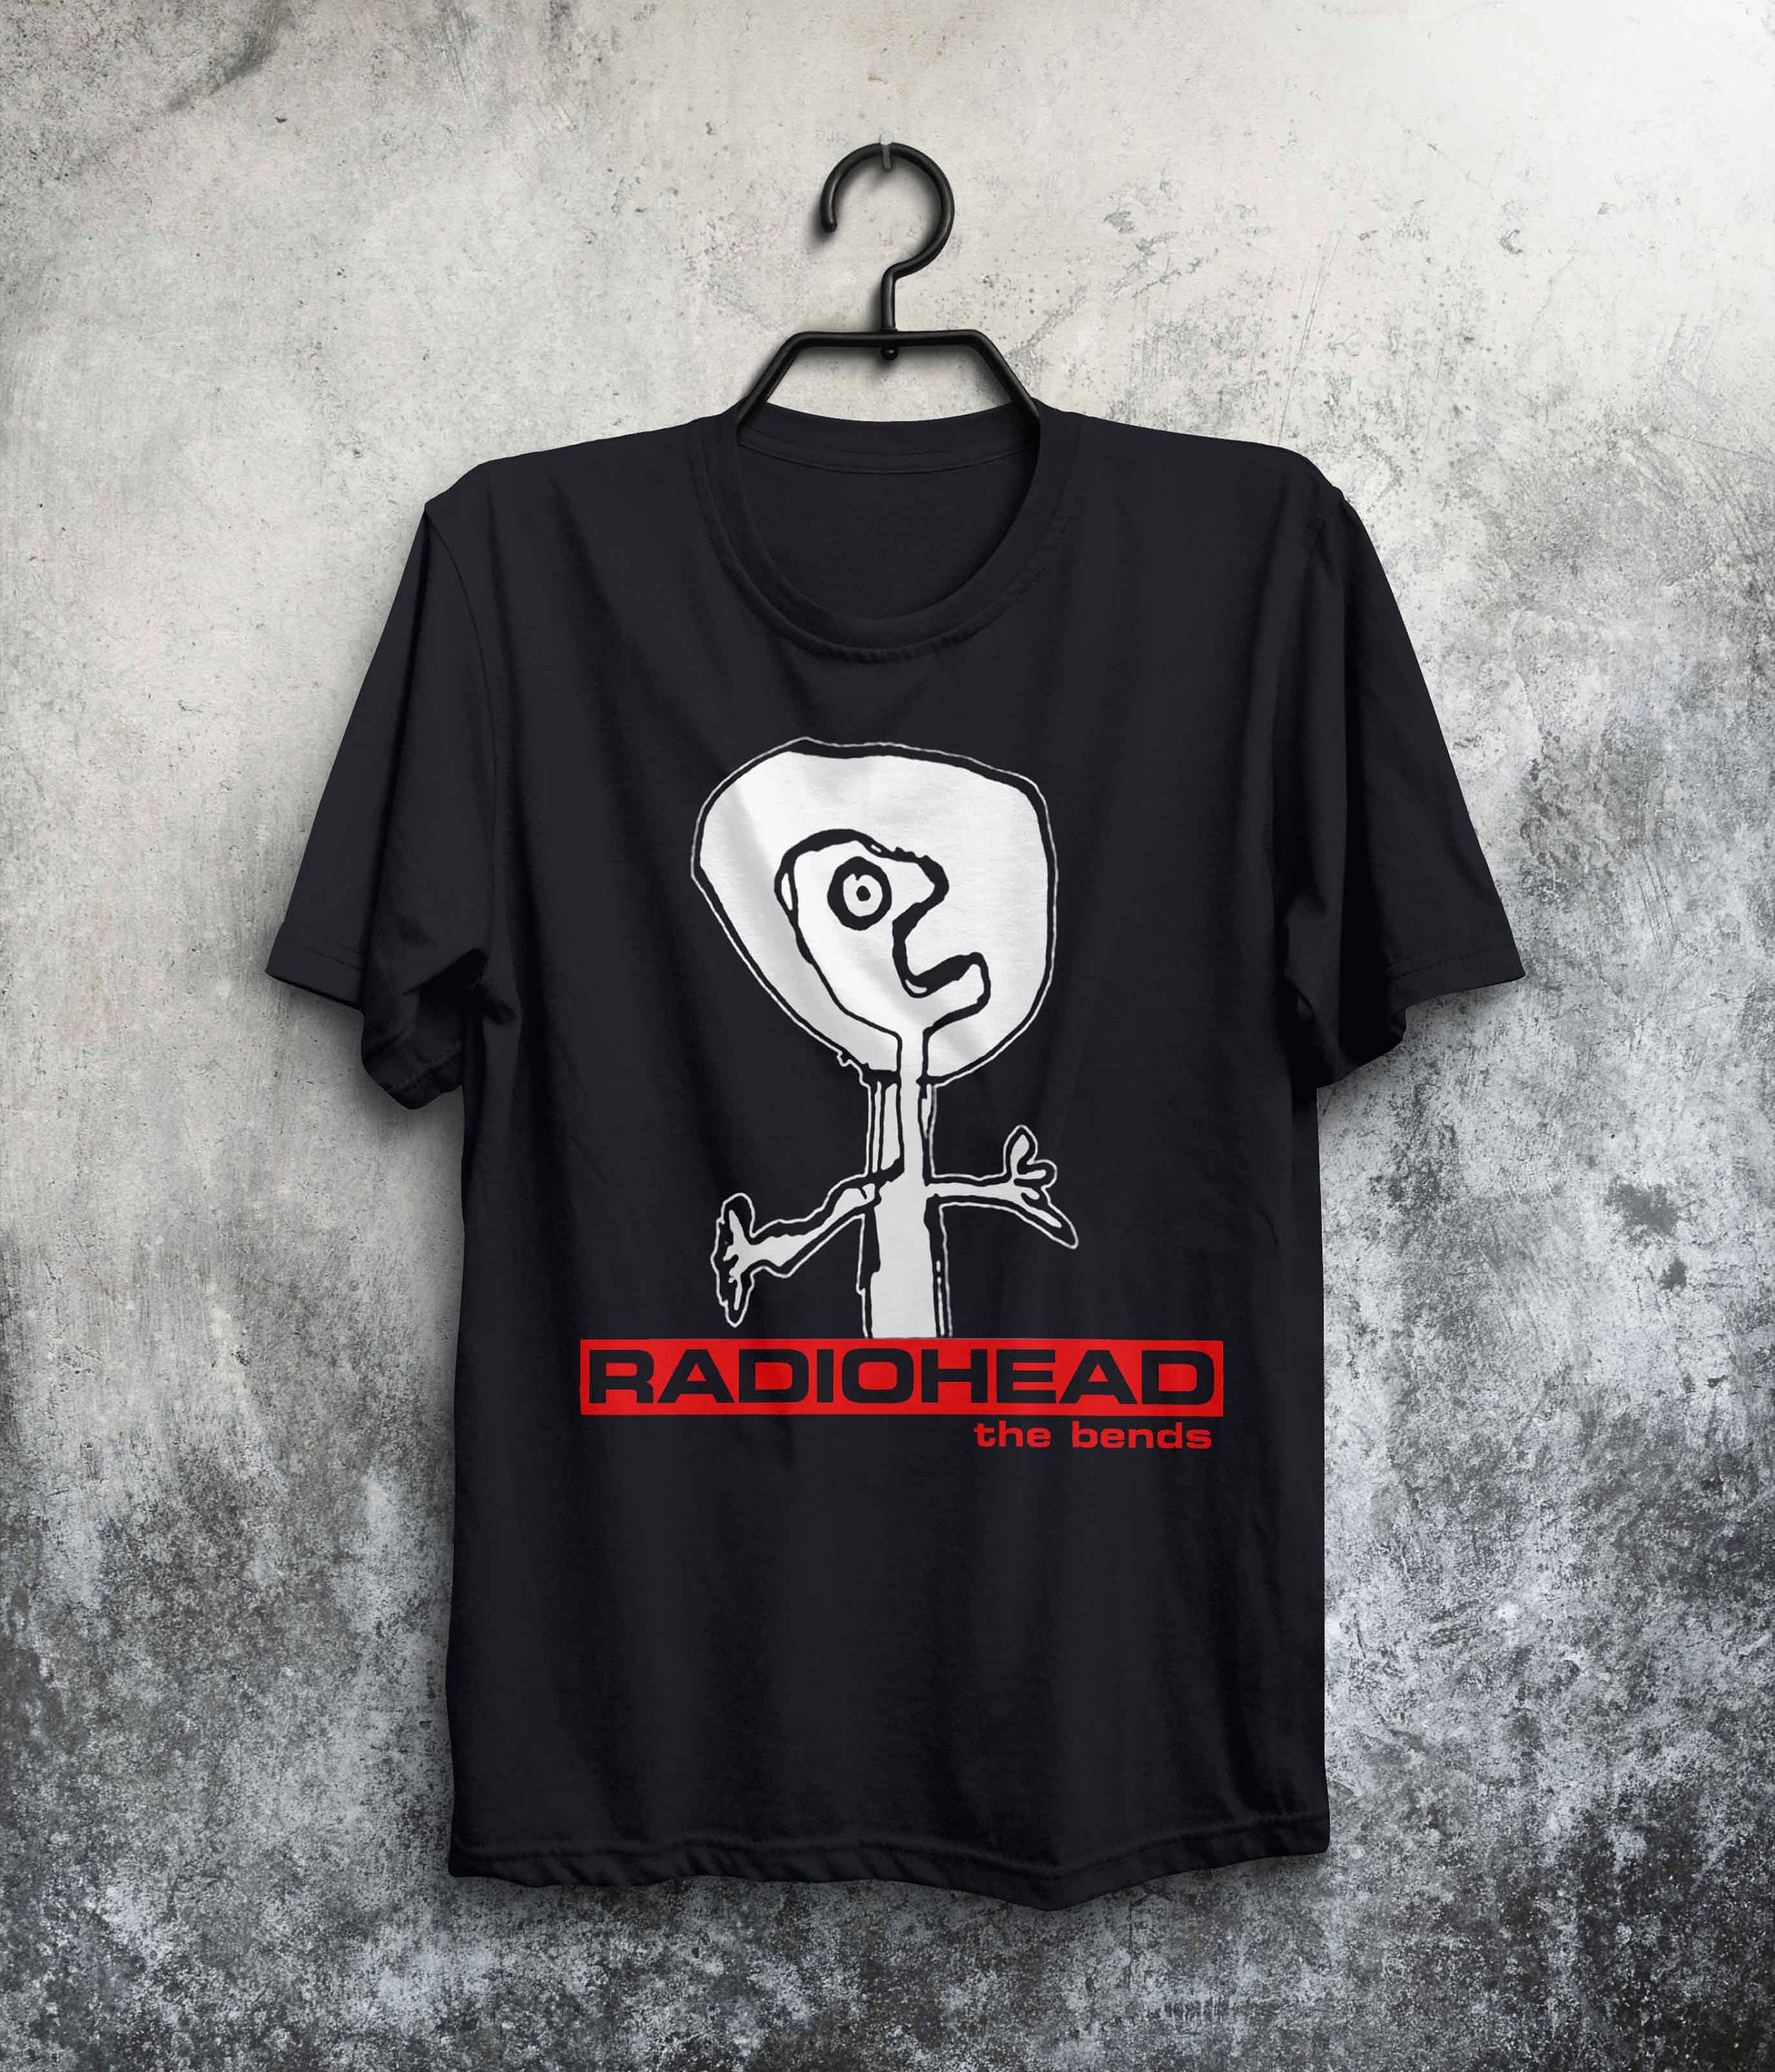 RADIOHEAD The Bends T shirt Unisex Black Gift for men, women Unisex T shirt